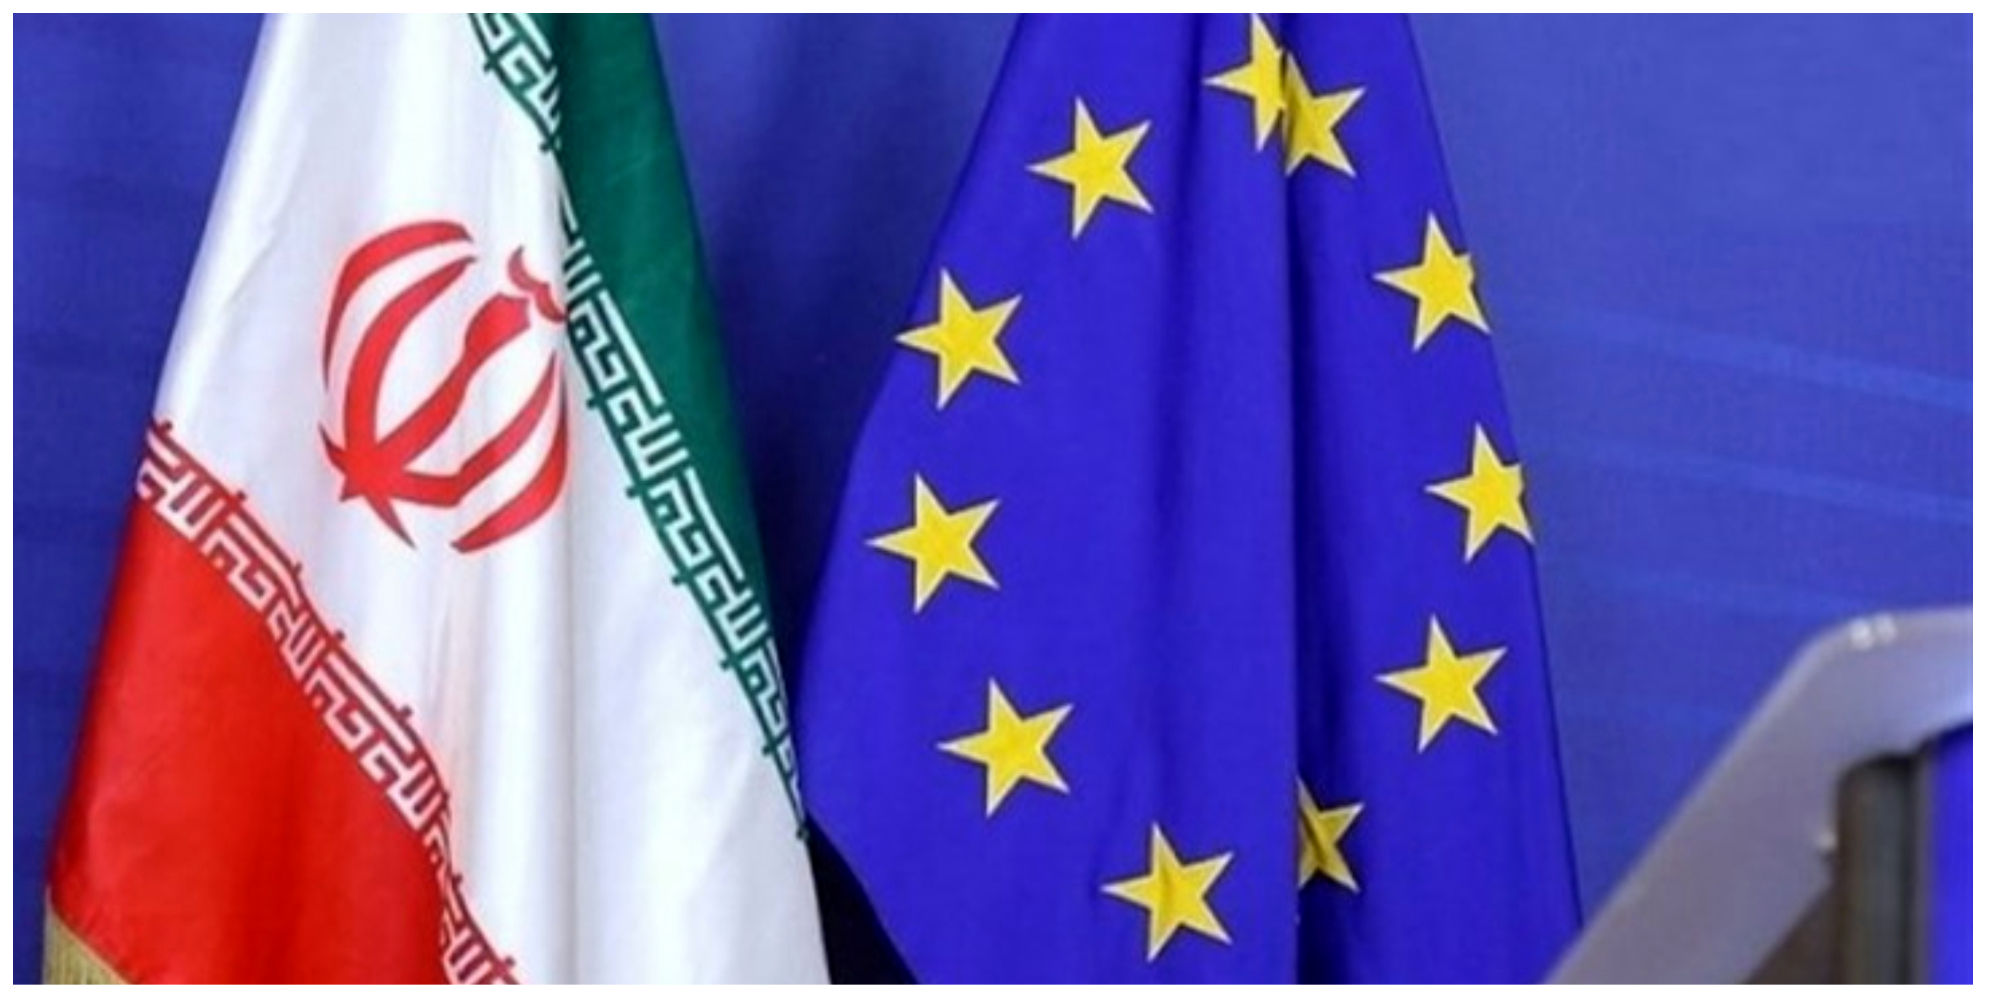 فوری/بسته تحریمی جدید اتحادیه اروپا علیه ایران / دو وزیر تحریم شدند